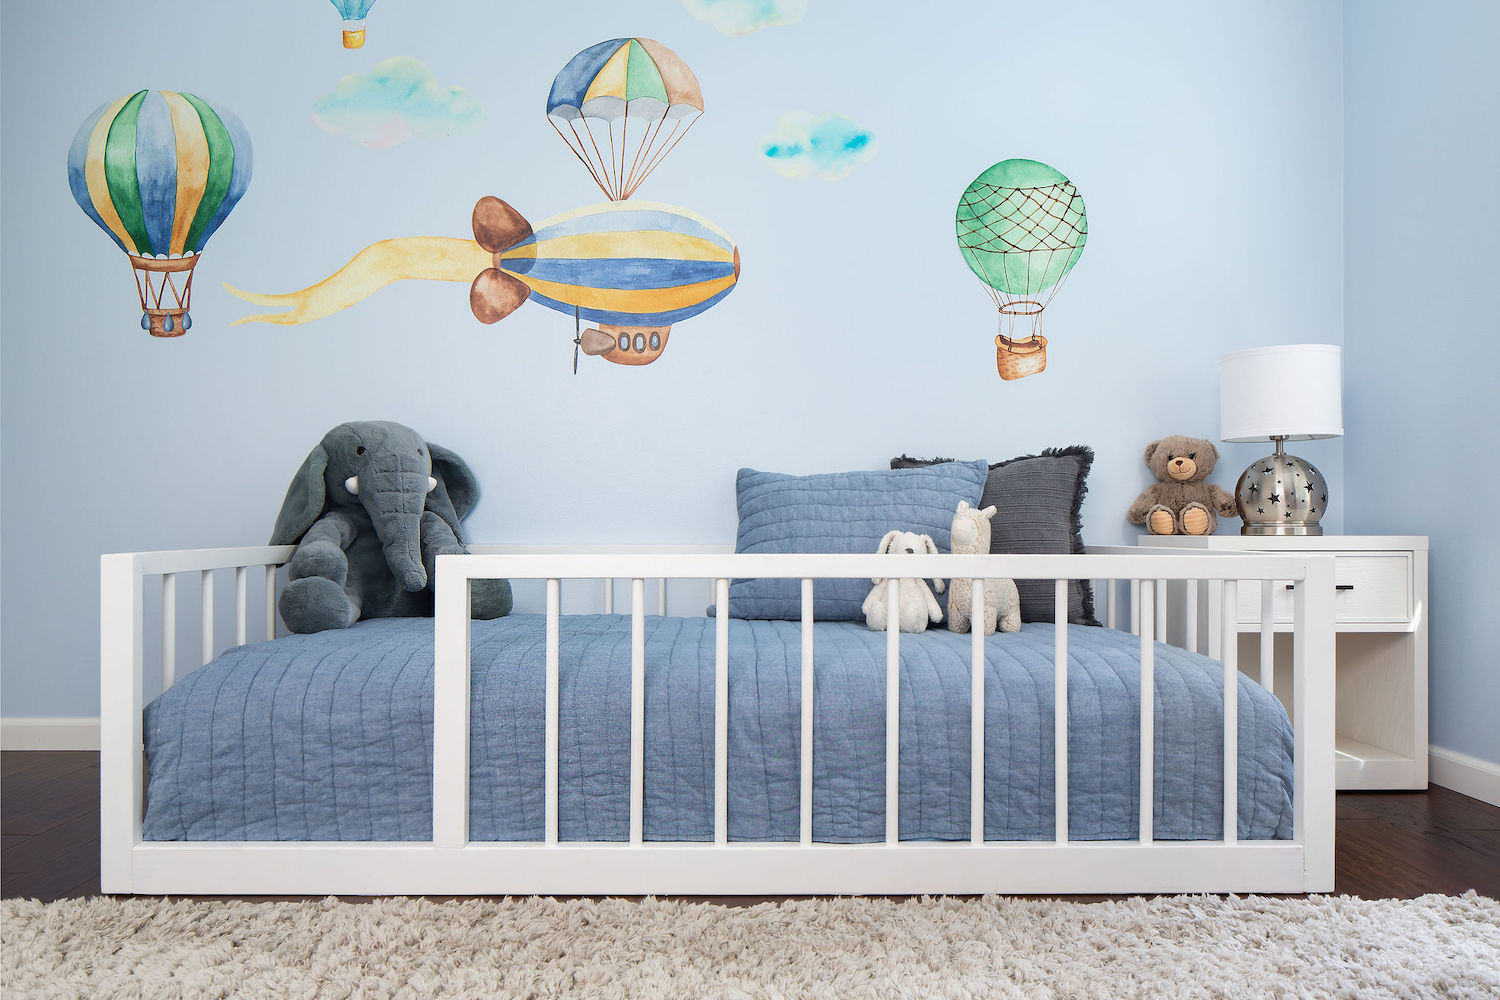 boys-bedroom-interior-design-custom-mural-hot-air-balloons